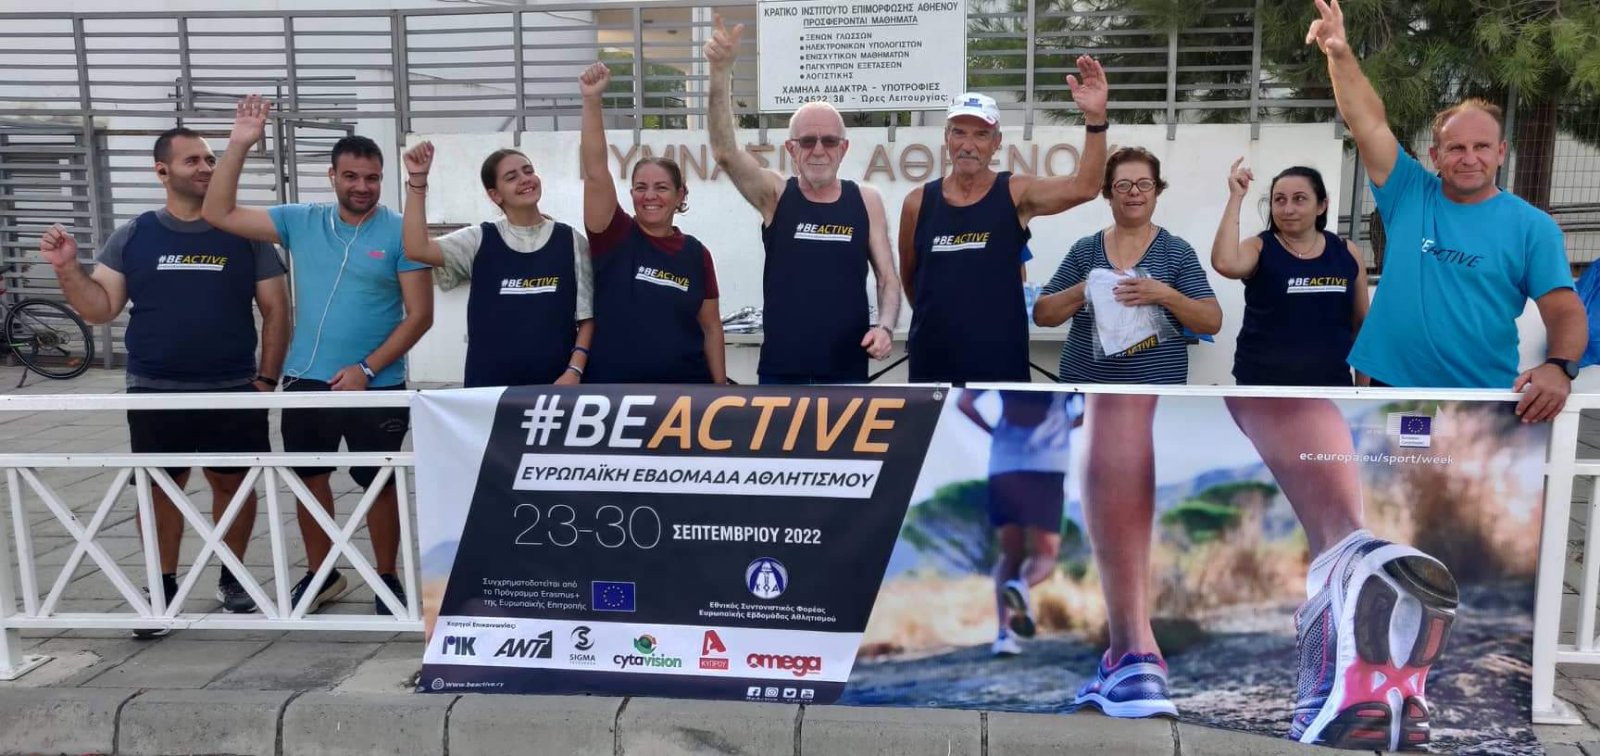 Με απόλυτη  επιτυχία ολοκληρώθηκε η 8η Ευρωπαϊκή Εβδομάδα Αθλητισμού #Βeactive στον Δήμο Αθηένου